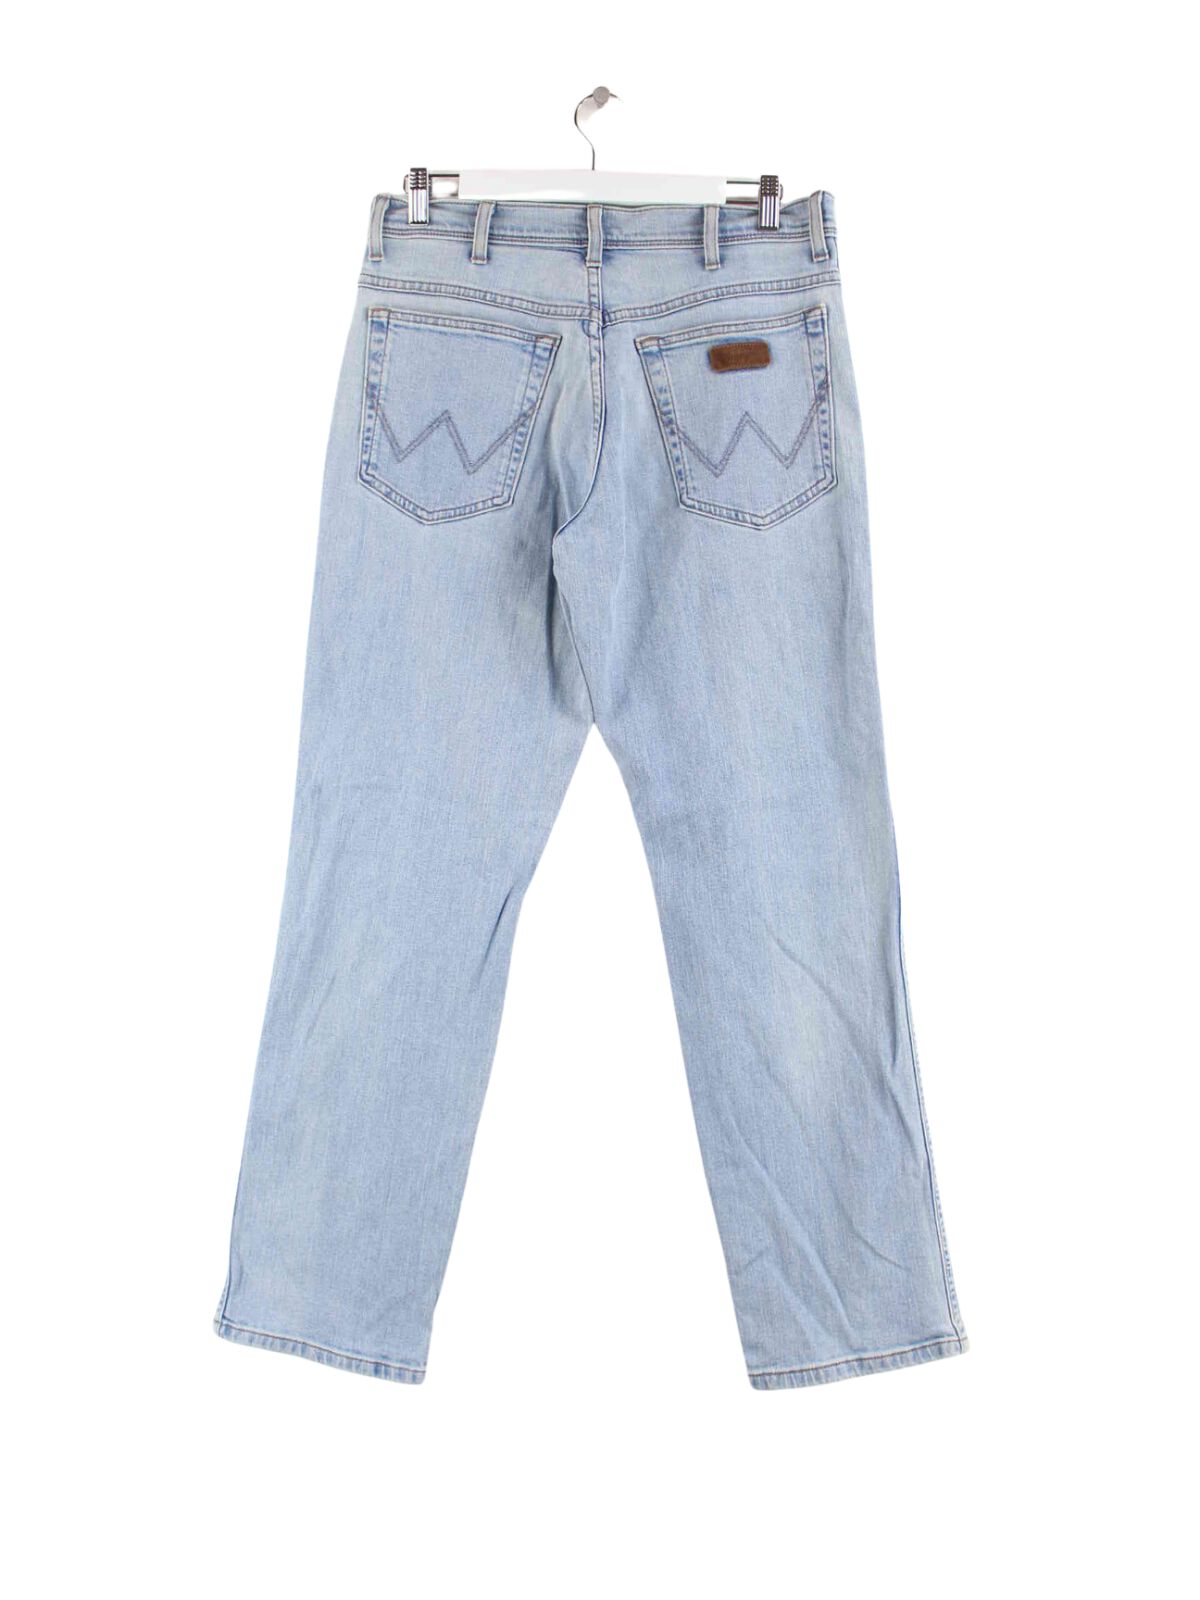 Wrangler Regular Fit Jeans Blau W32 L30 (back image)